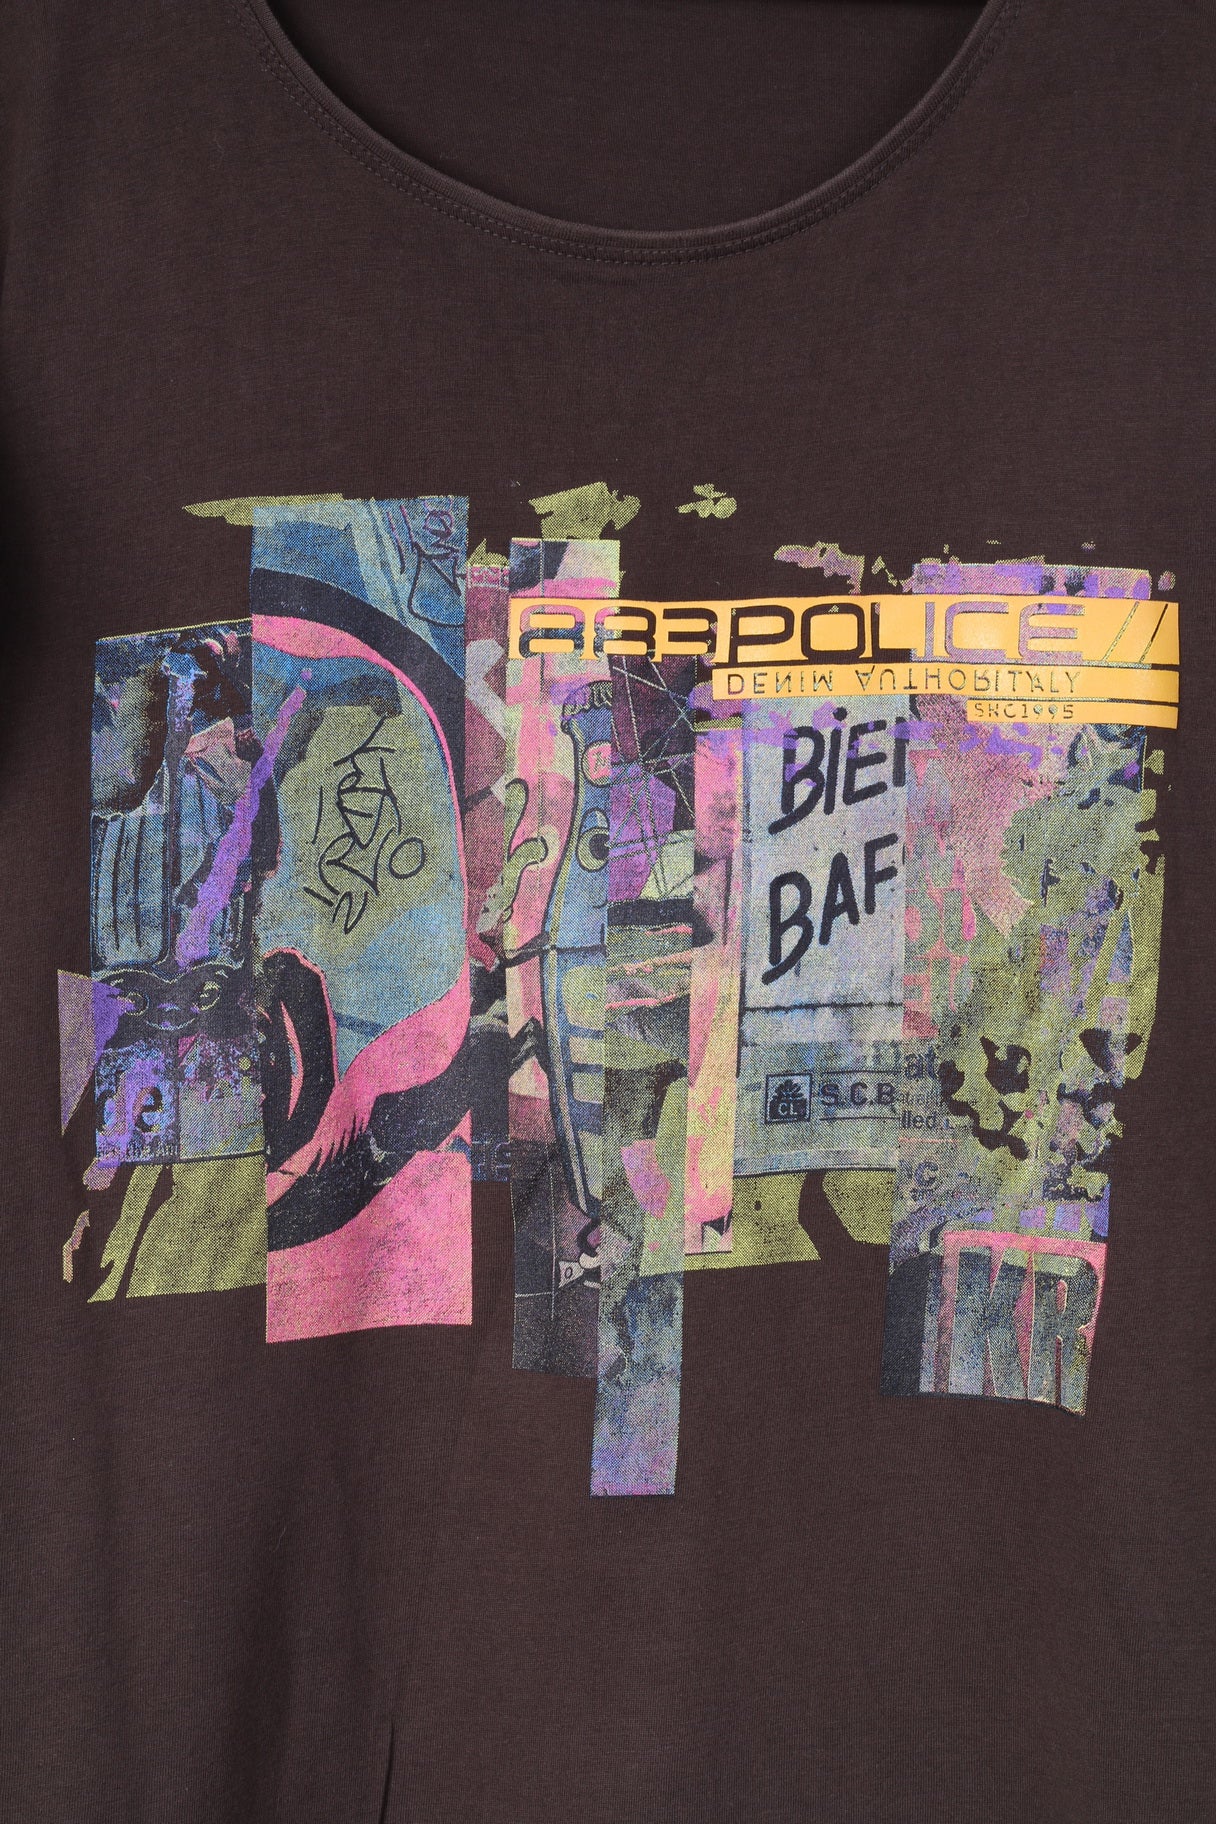 Camicia da uomo 883 Police Maglietta casual con graffiti grafici in cotone marrone 